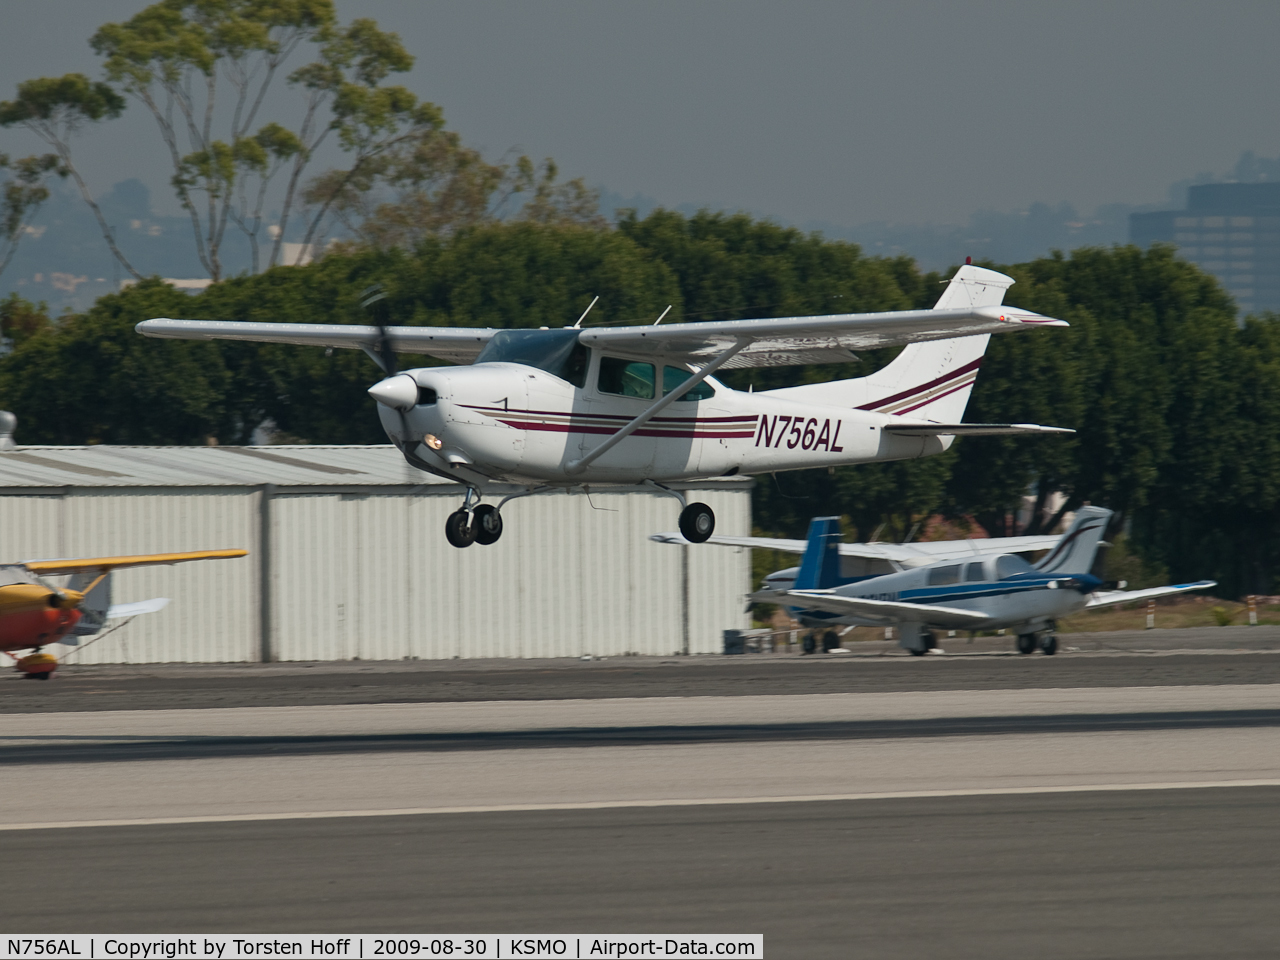 N756AL, 1979 Cessna TR182 Turbo Skylane RG C/N R18201023, N756AL arriving on RWY 21